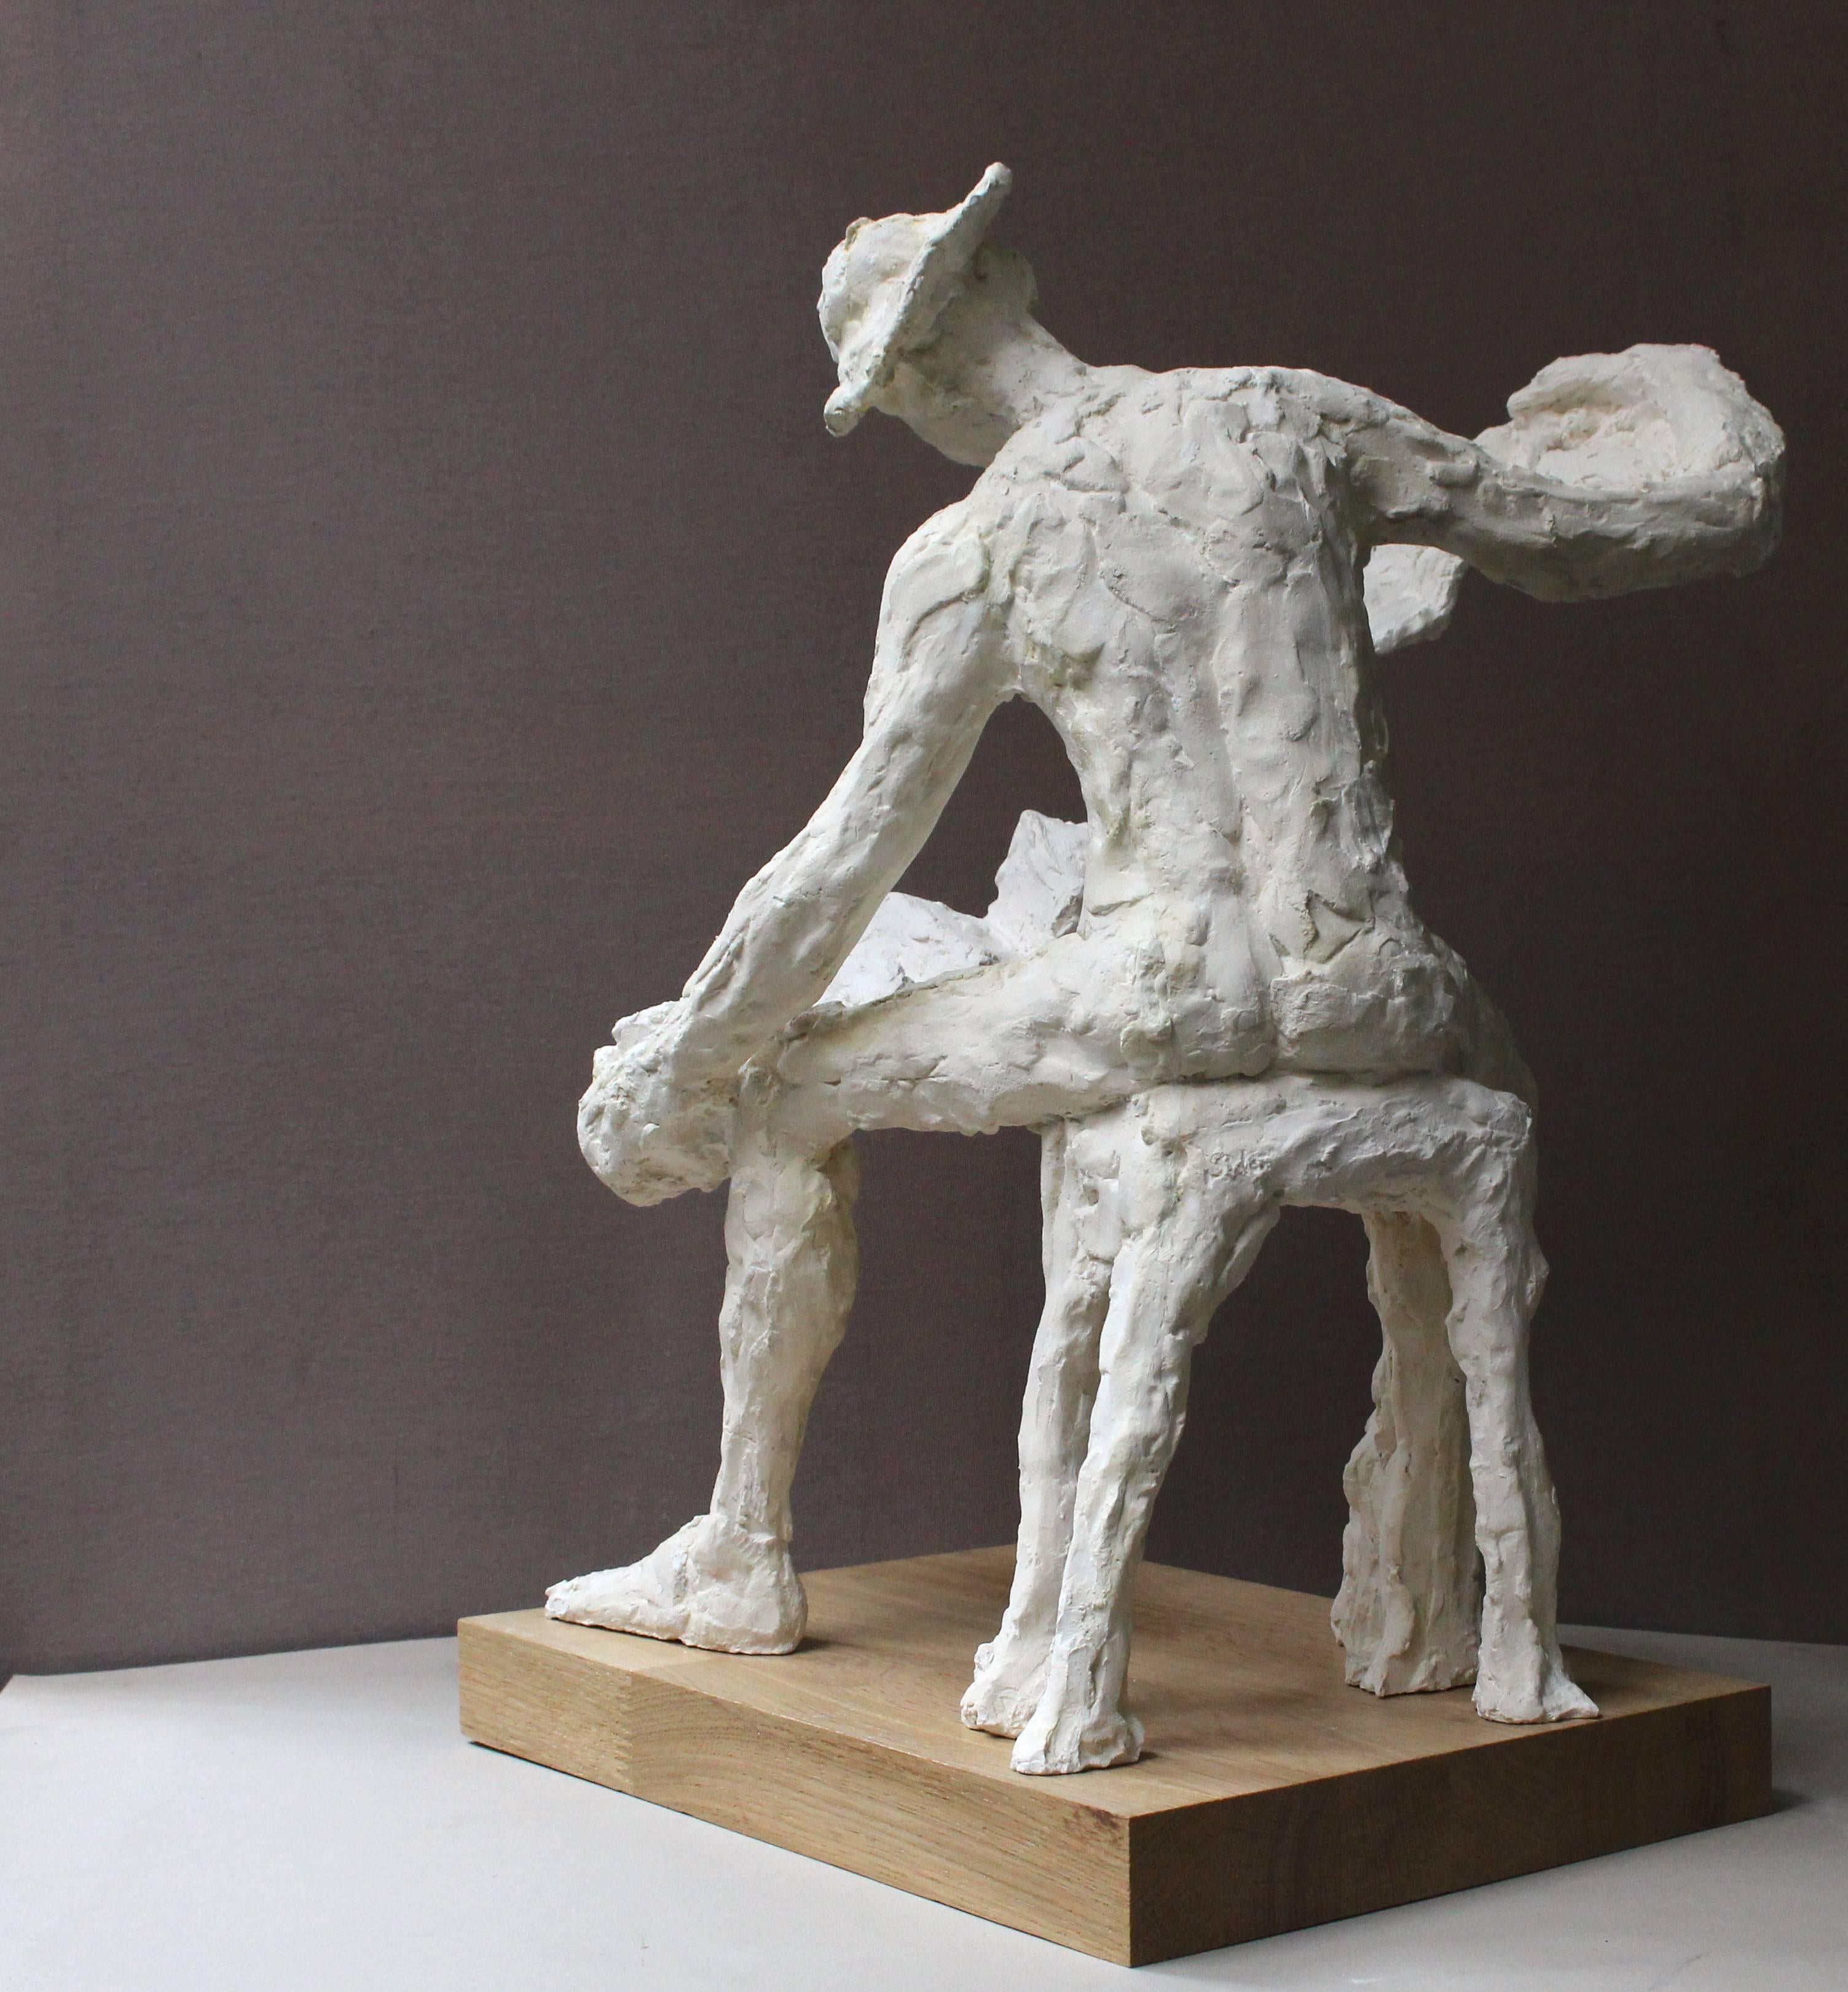 1. Preis in Frankreich für die beste Skulptur im Künstlersalon des Grand Palais, Paris.

von der französischen Künstlerin Sidonie Laurens, Skulptur aus Terrakotta.

Titel der Skulptur: Le Bandonéon (Das Bandoneon)

Sie wird mit einem